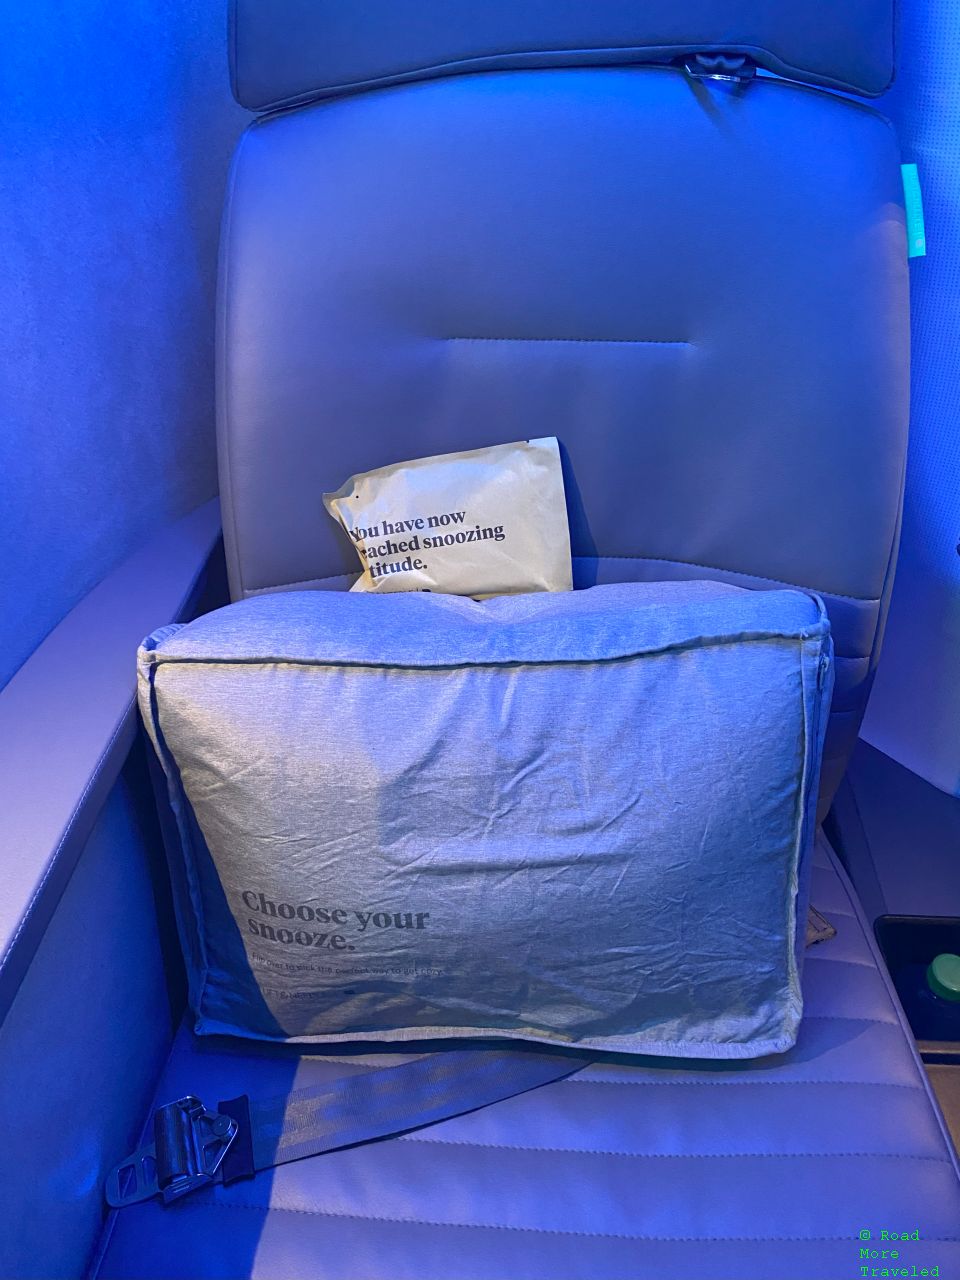 jetBlue A321neo LR Mint Business Class - Mint bedding